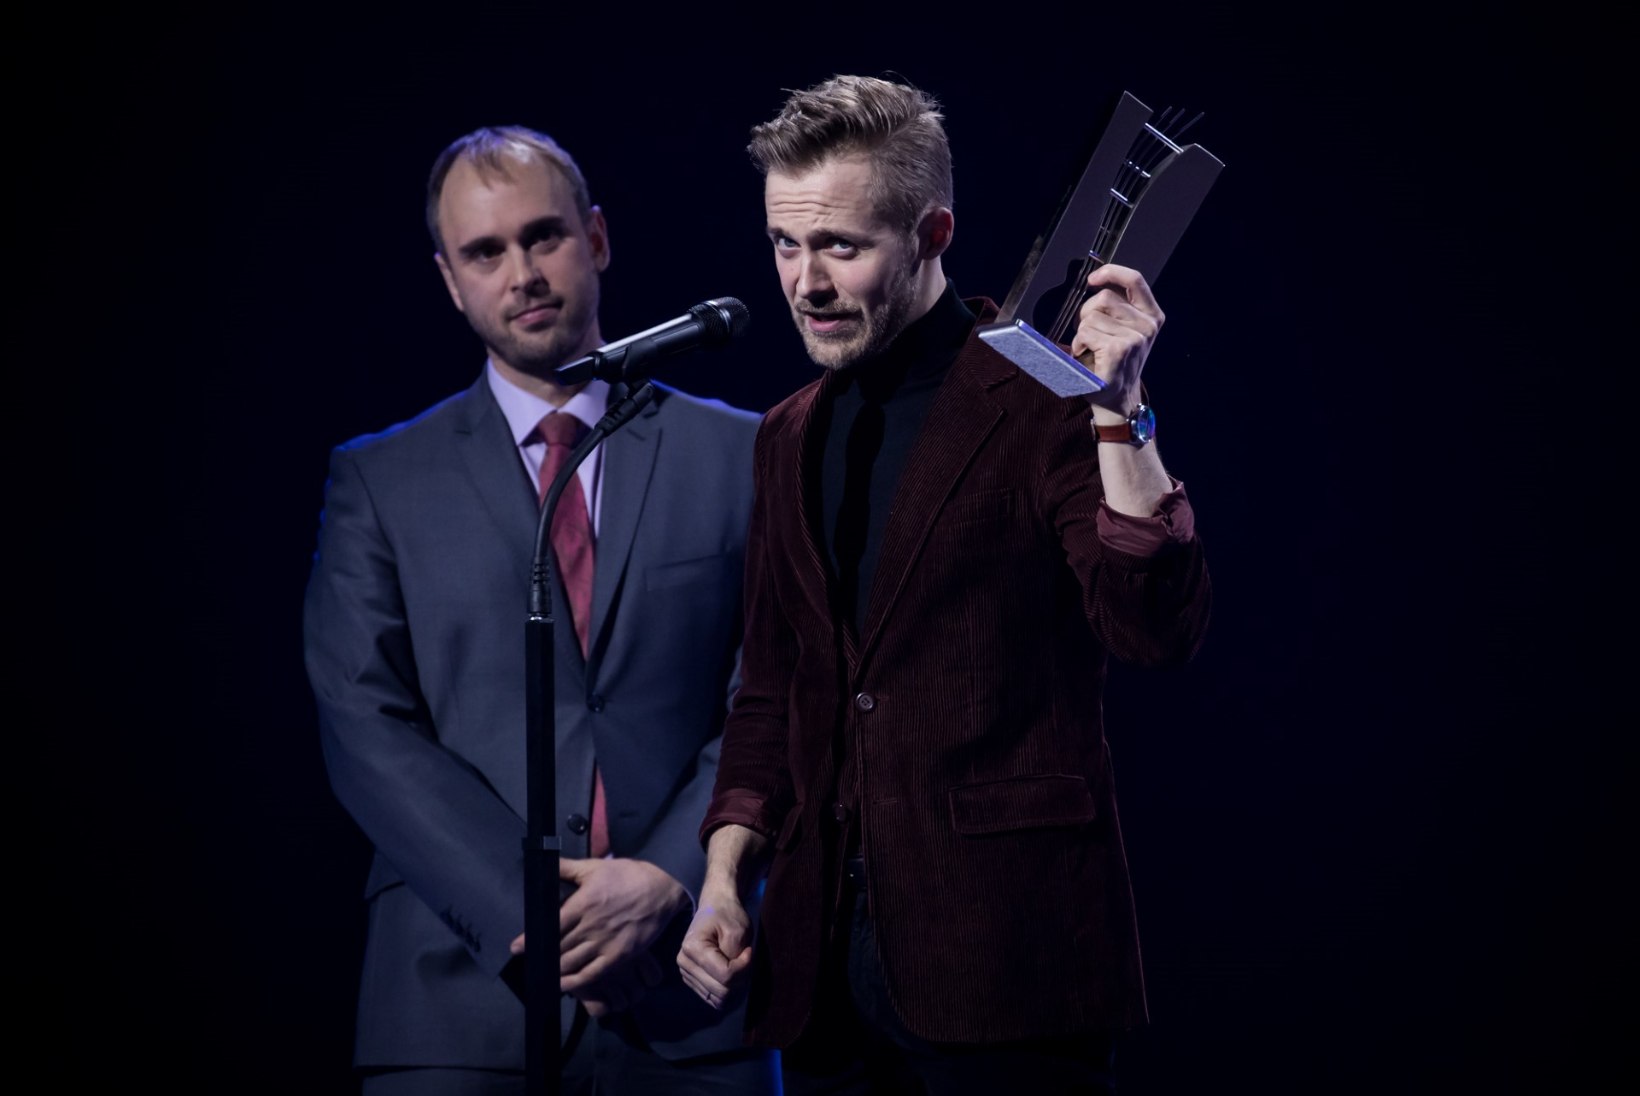 Aasta meesartist Erki Pärnoja: alternatiivalbumi kategoorias arvasin endal šanssi olevat, aga meesartisti auhind oli tõsine šokk!